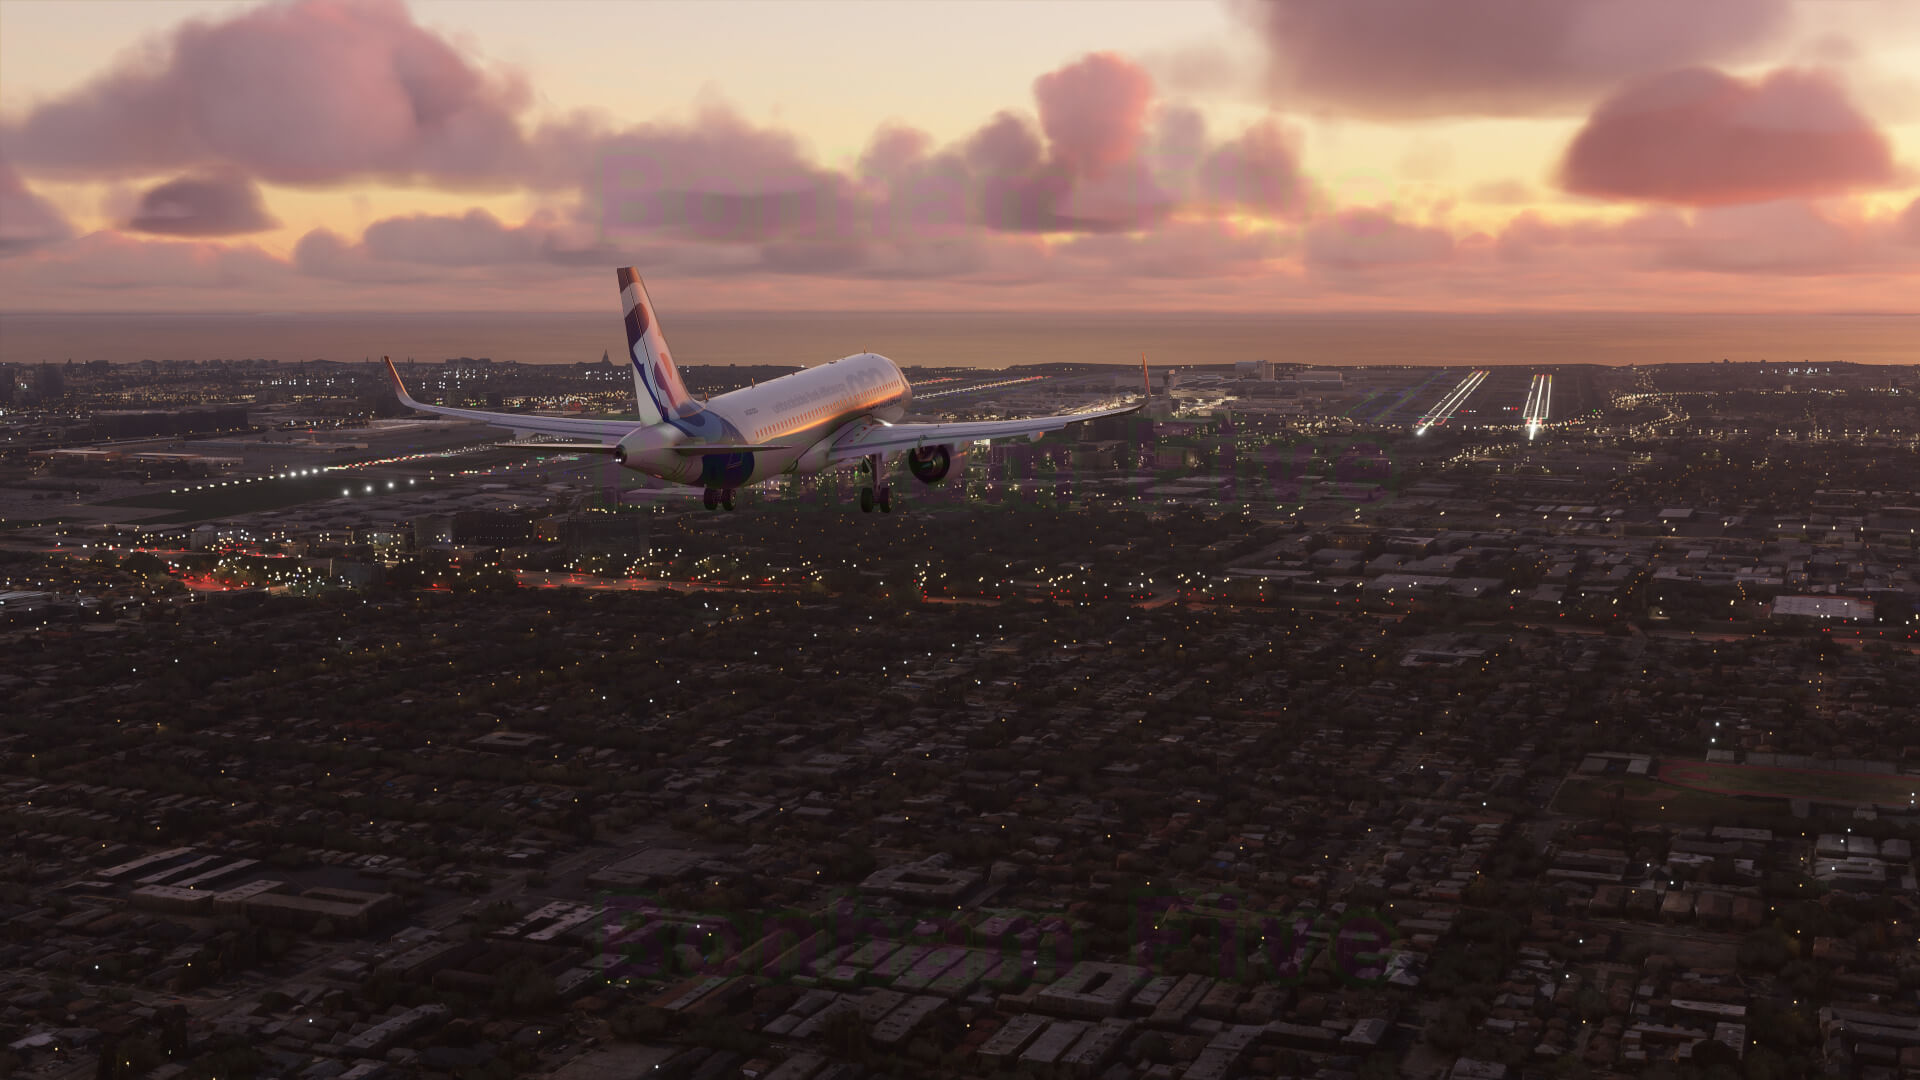 《微軟飛行模擬》新截圖公布 展示環境、城市和飛行器